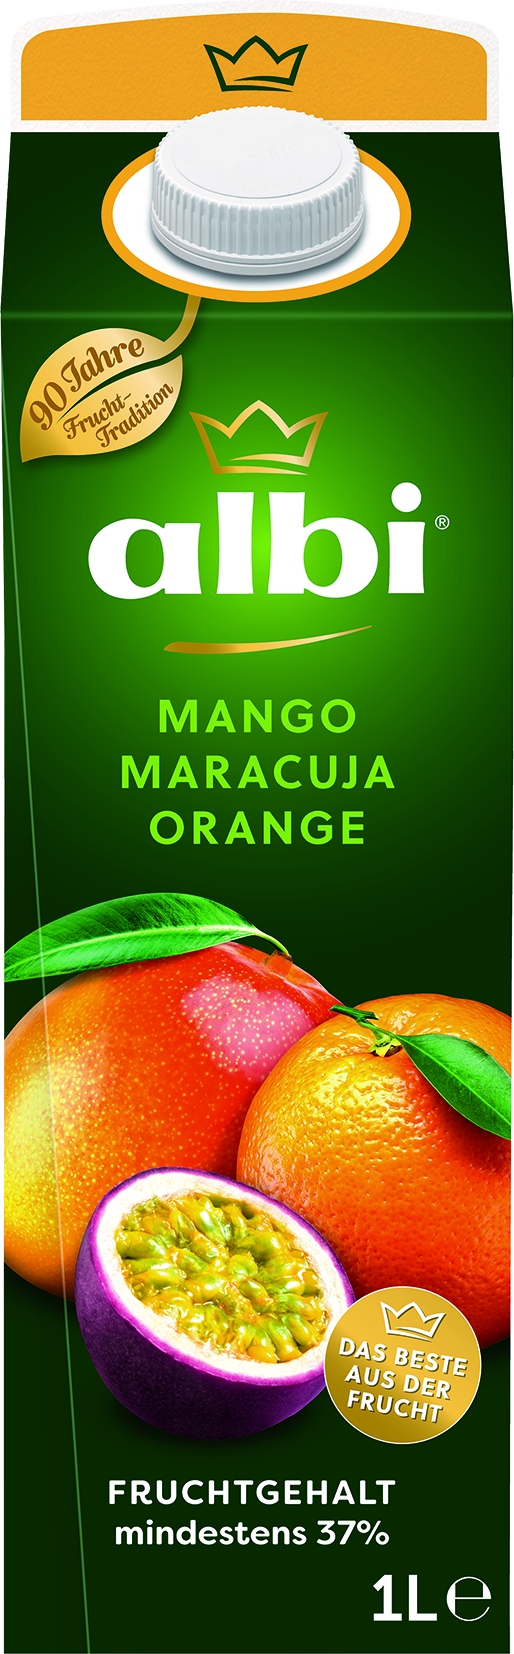 mango/passion fruit juice   